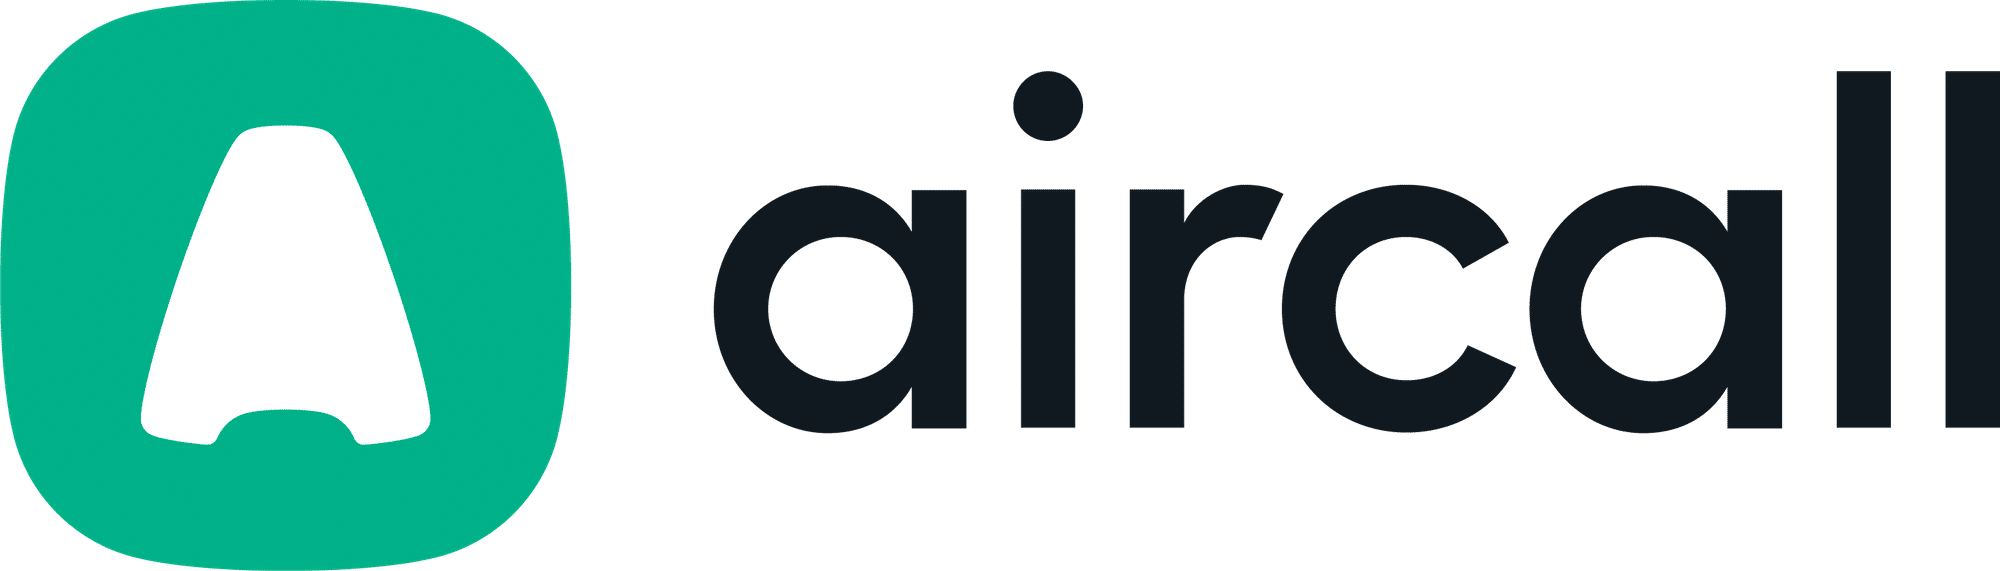 logo aircall